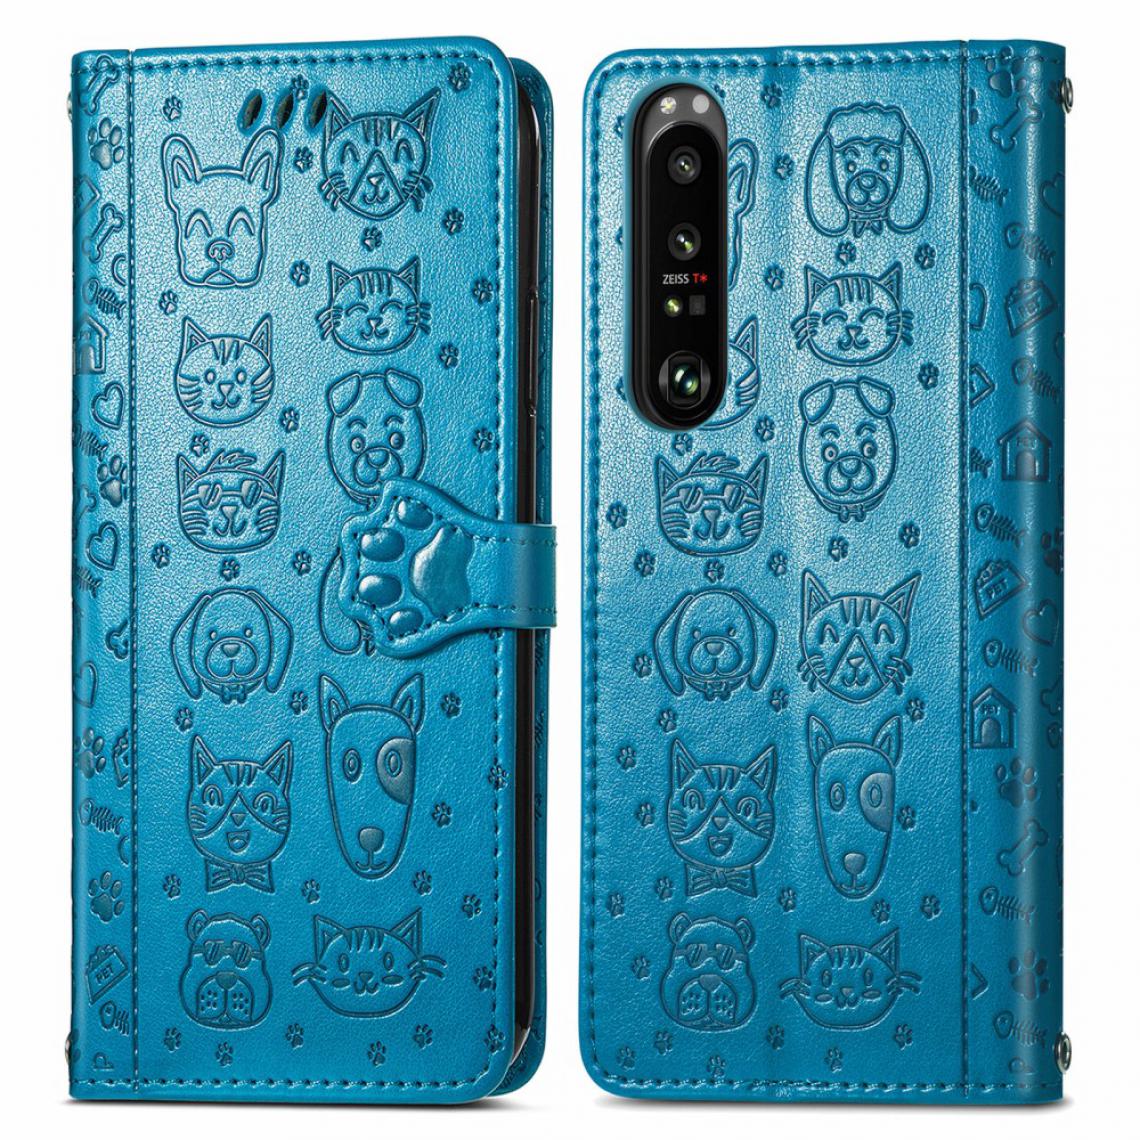 Other - Etui en PU Impression de motif de chien de chat avec support bleu pour votre Sony Xperia 1 III - Coque, étui smartphone